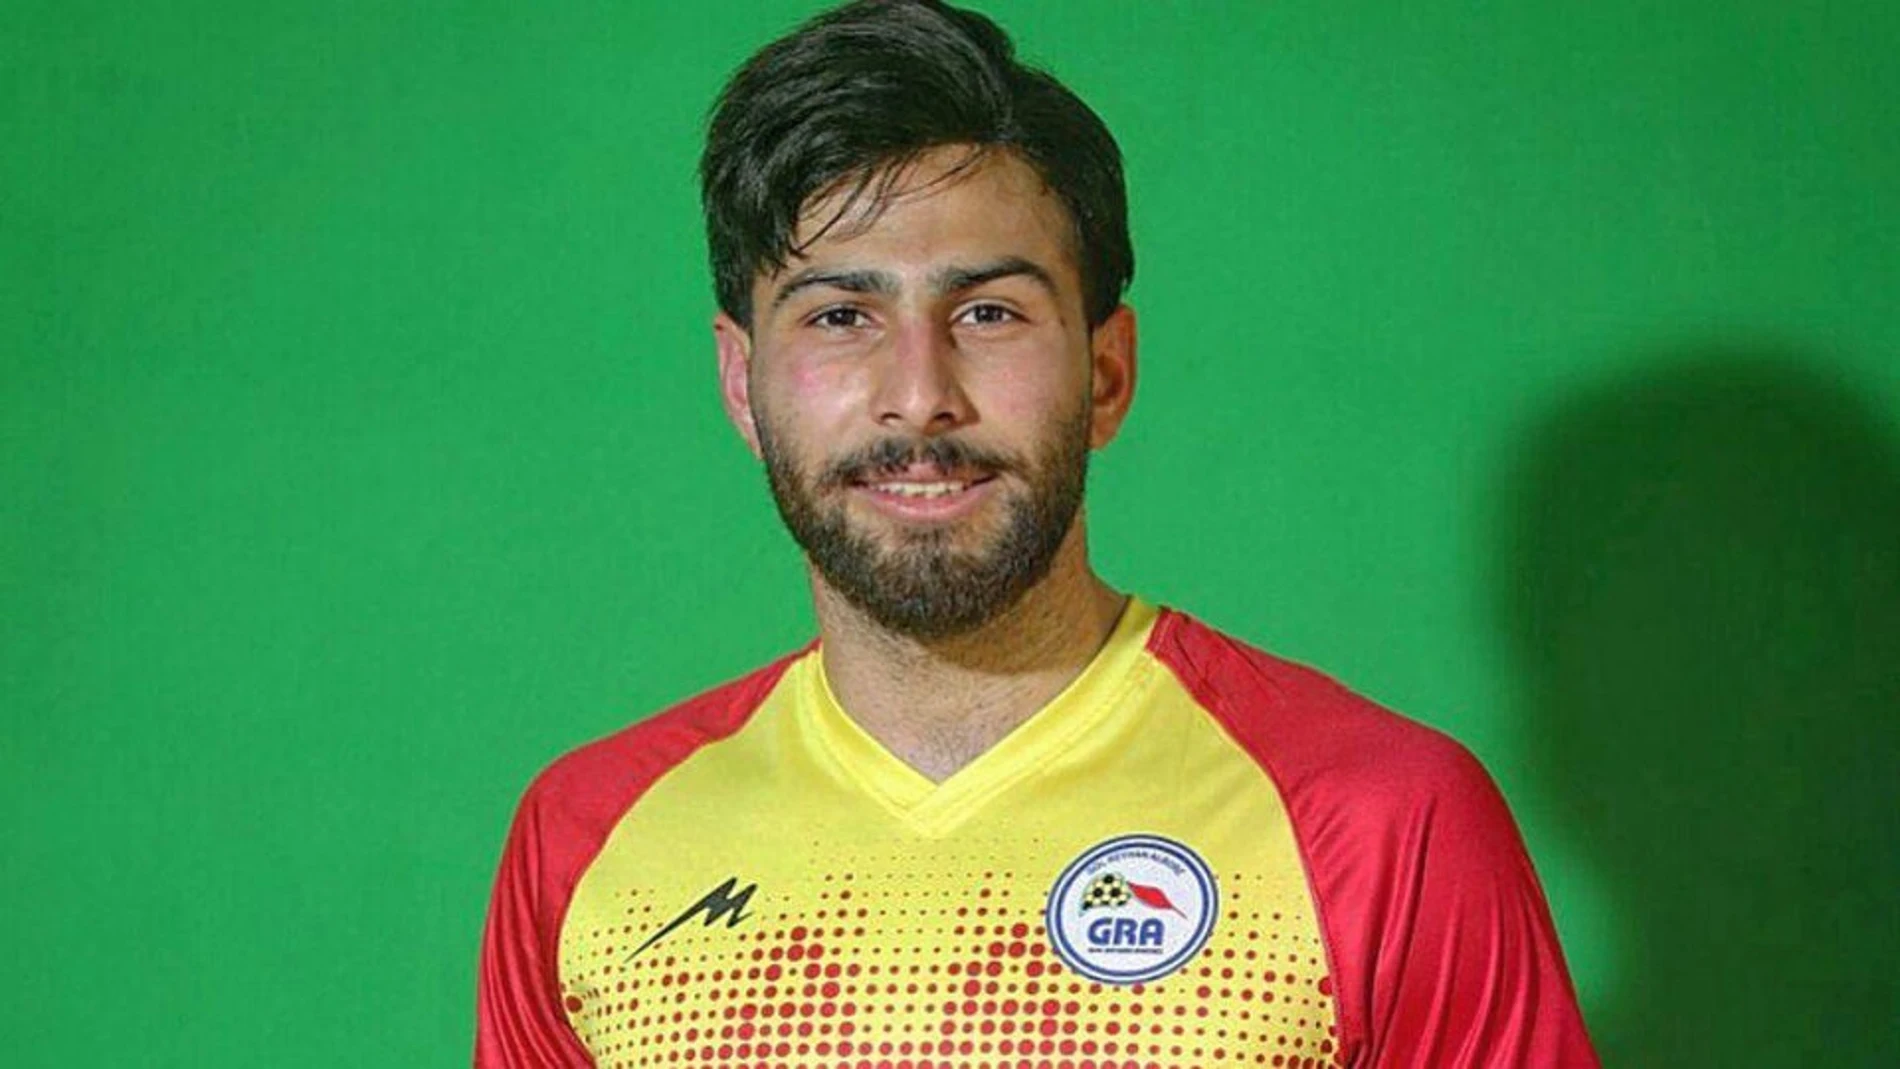 Oferta de trabajo Beca triunfante El futbolista iraní Amir Nasr-Azadani podría ser ahorcado en público